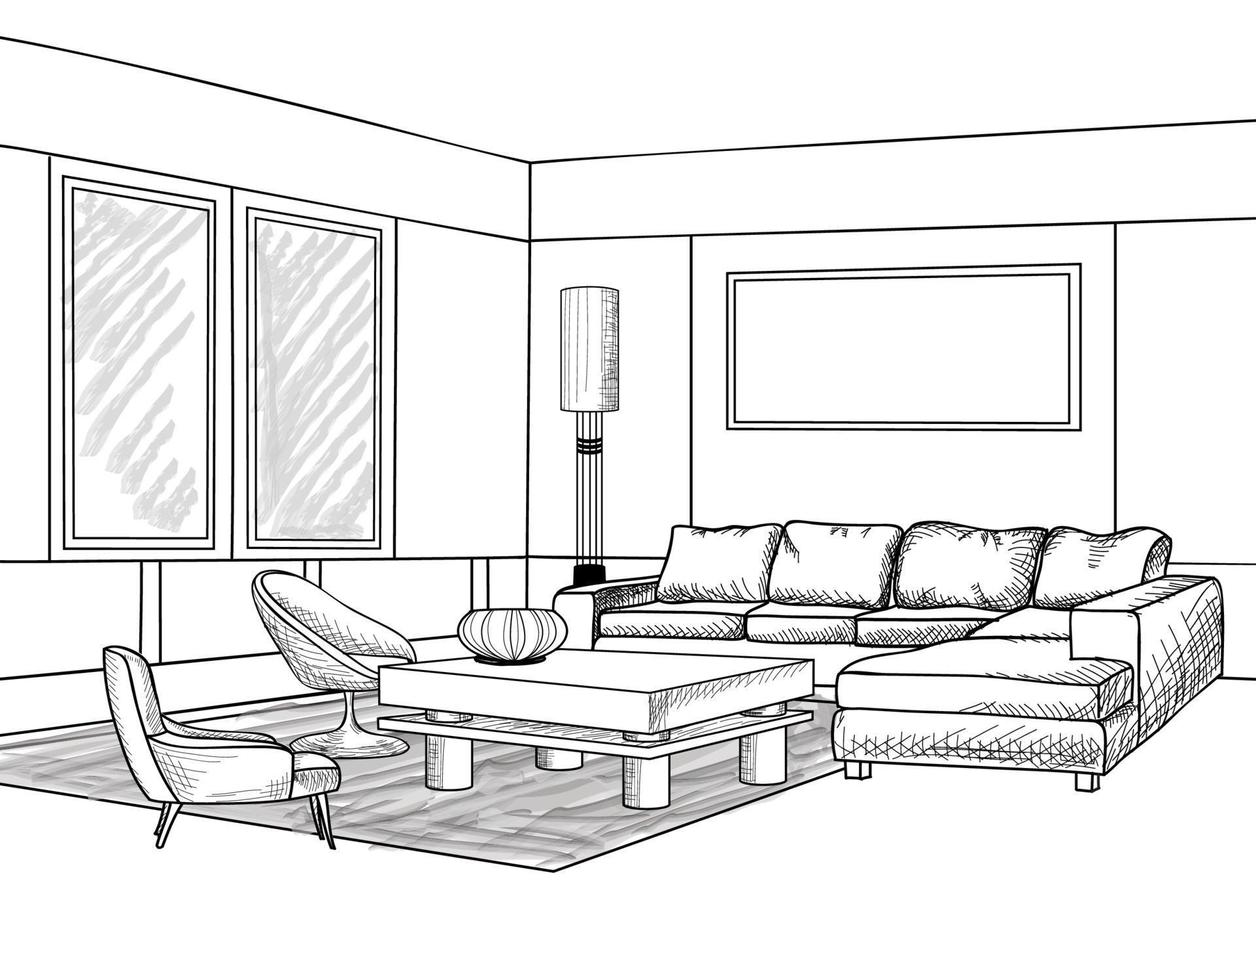 interior de la sala de estar de la casa. esbozo de muebles con sofá, estantería, mesa. diseño de dibujo de sala de estar. grabado dibujo a mano ilustración vector